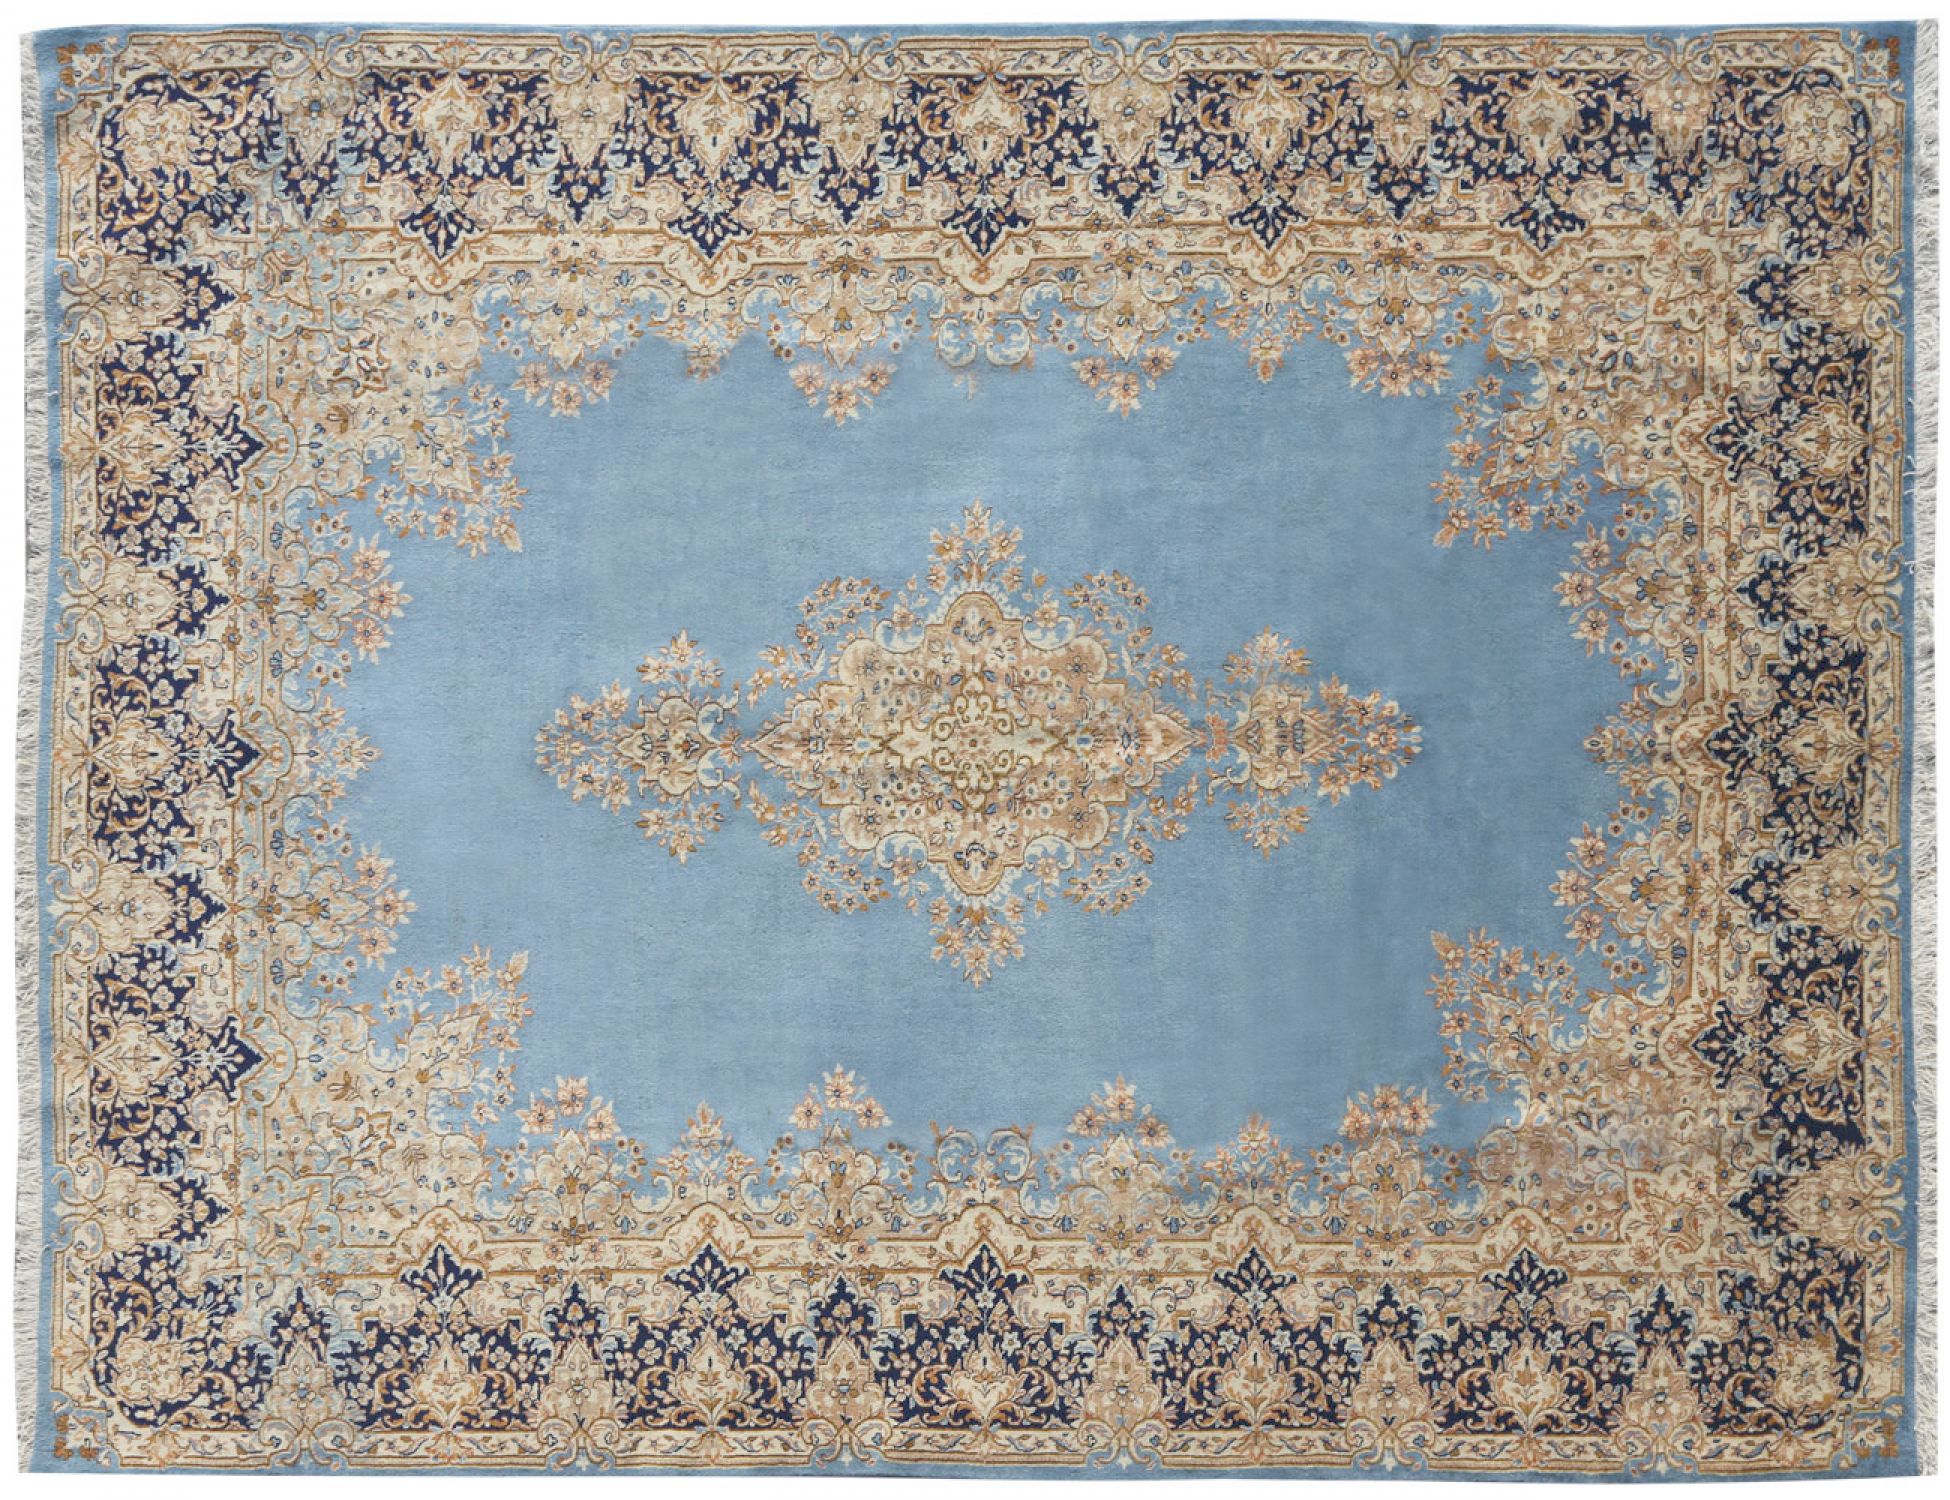  Περσικό Χαλί  Μπλε <br/>335 x 245 cm